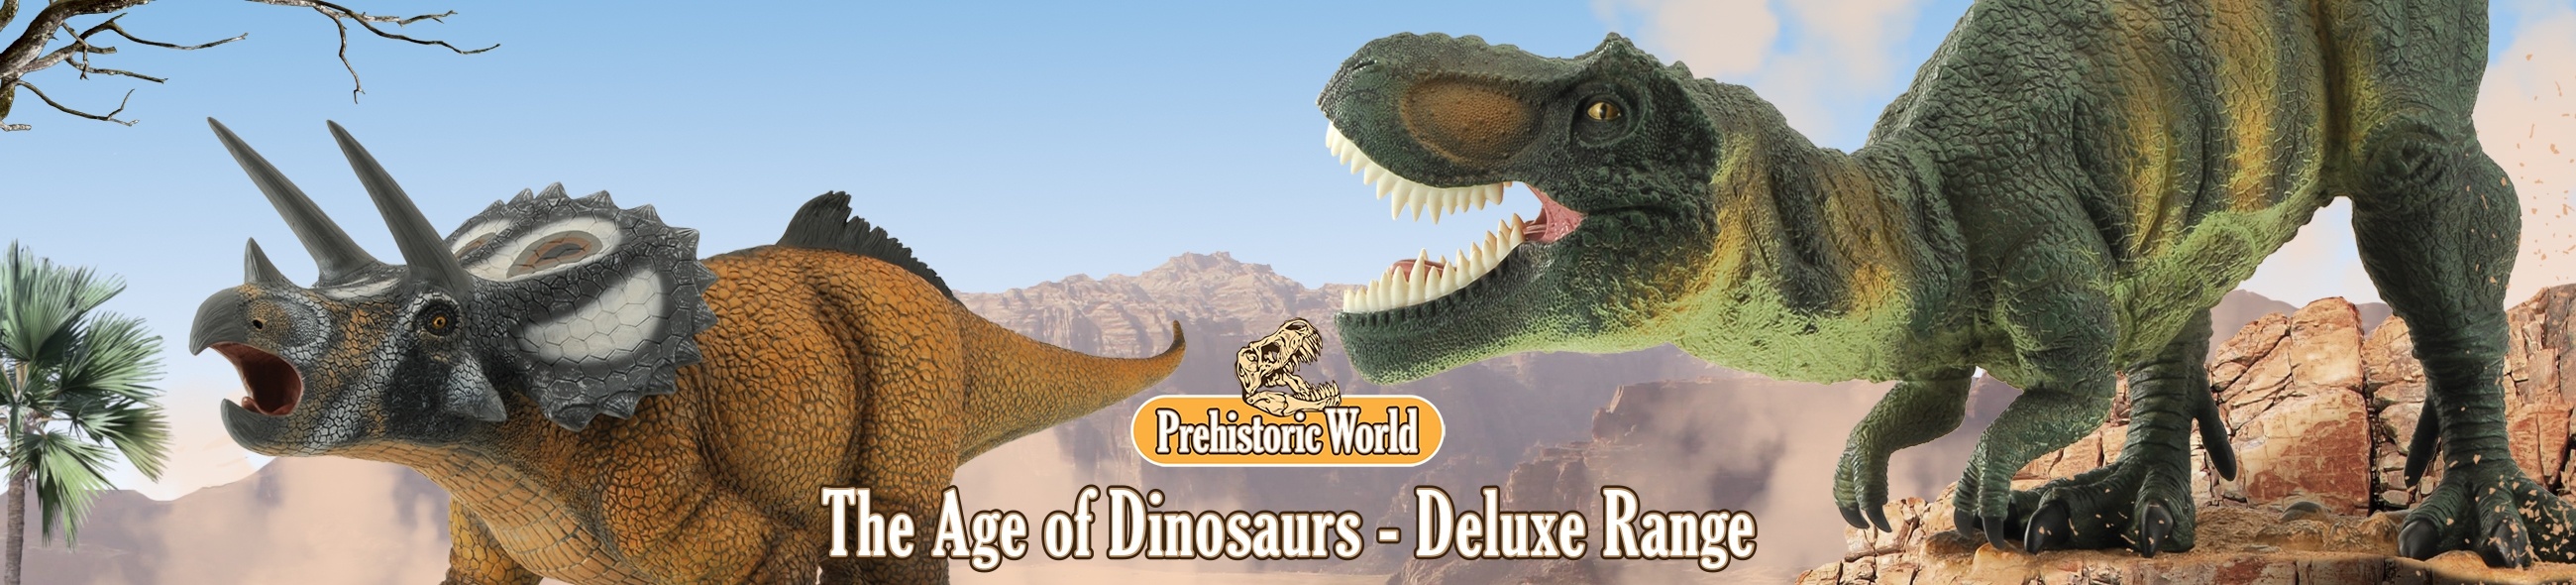 La Era de los Dinosauios Deluxe